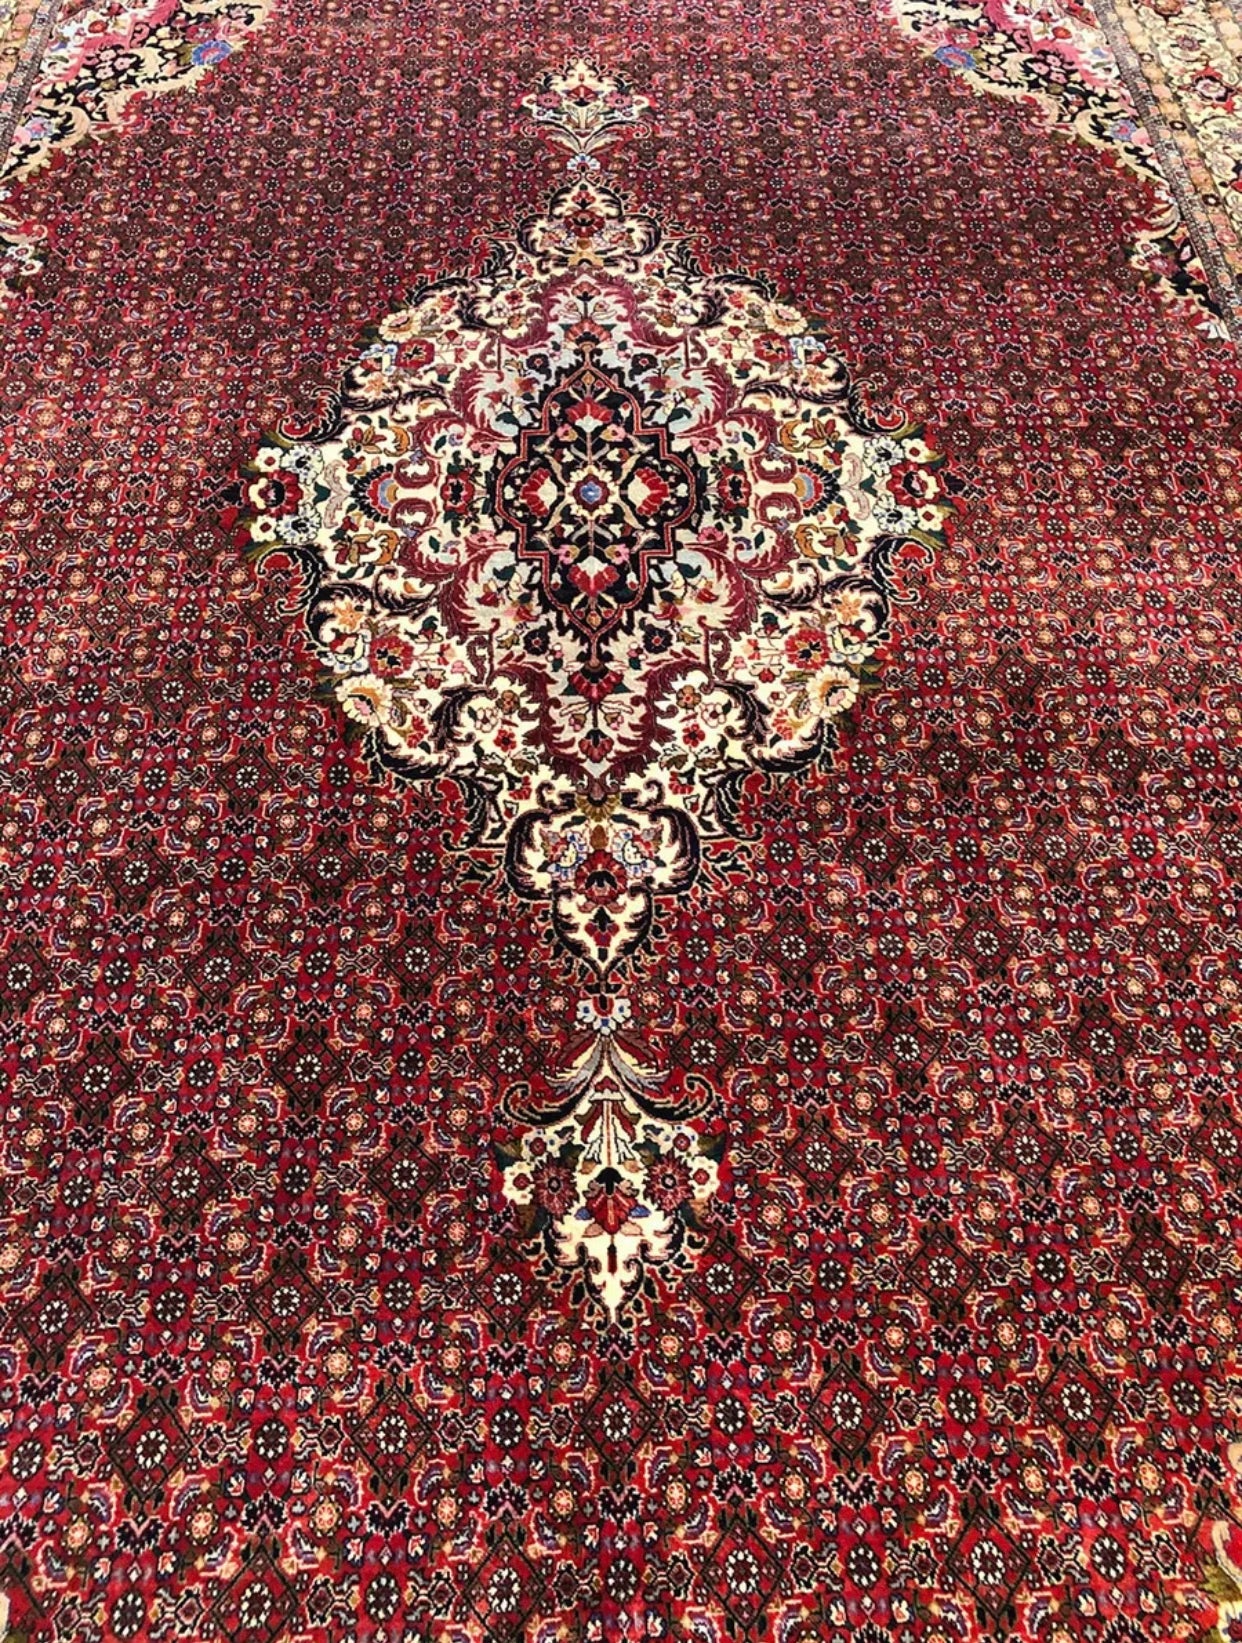 A Brilliant Vintage Persian Bidjar Rug